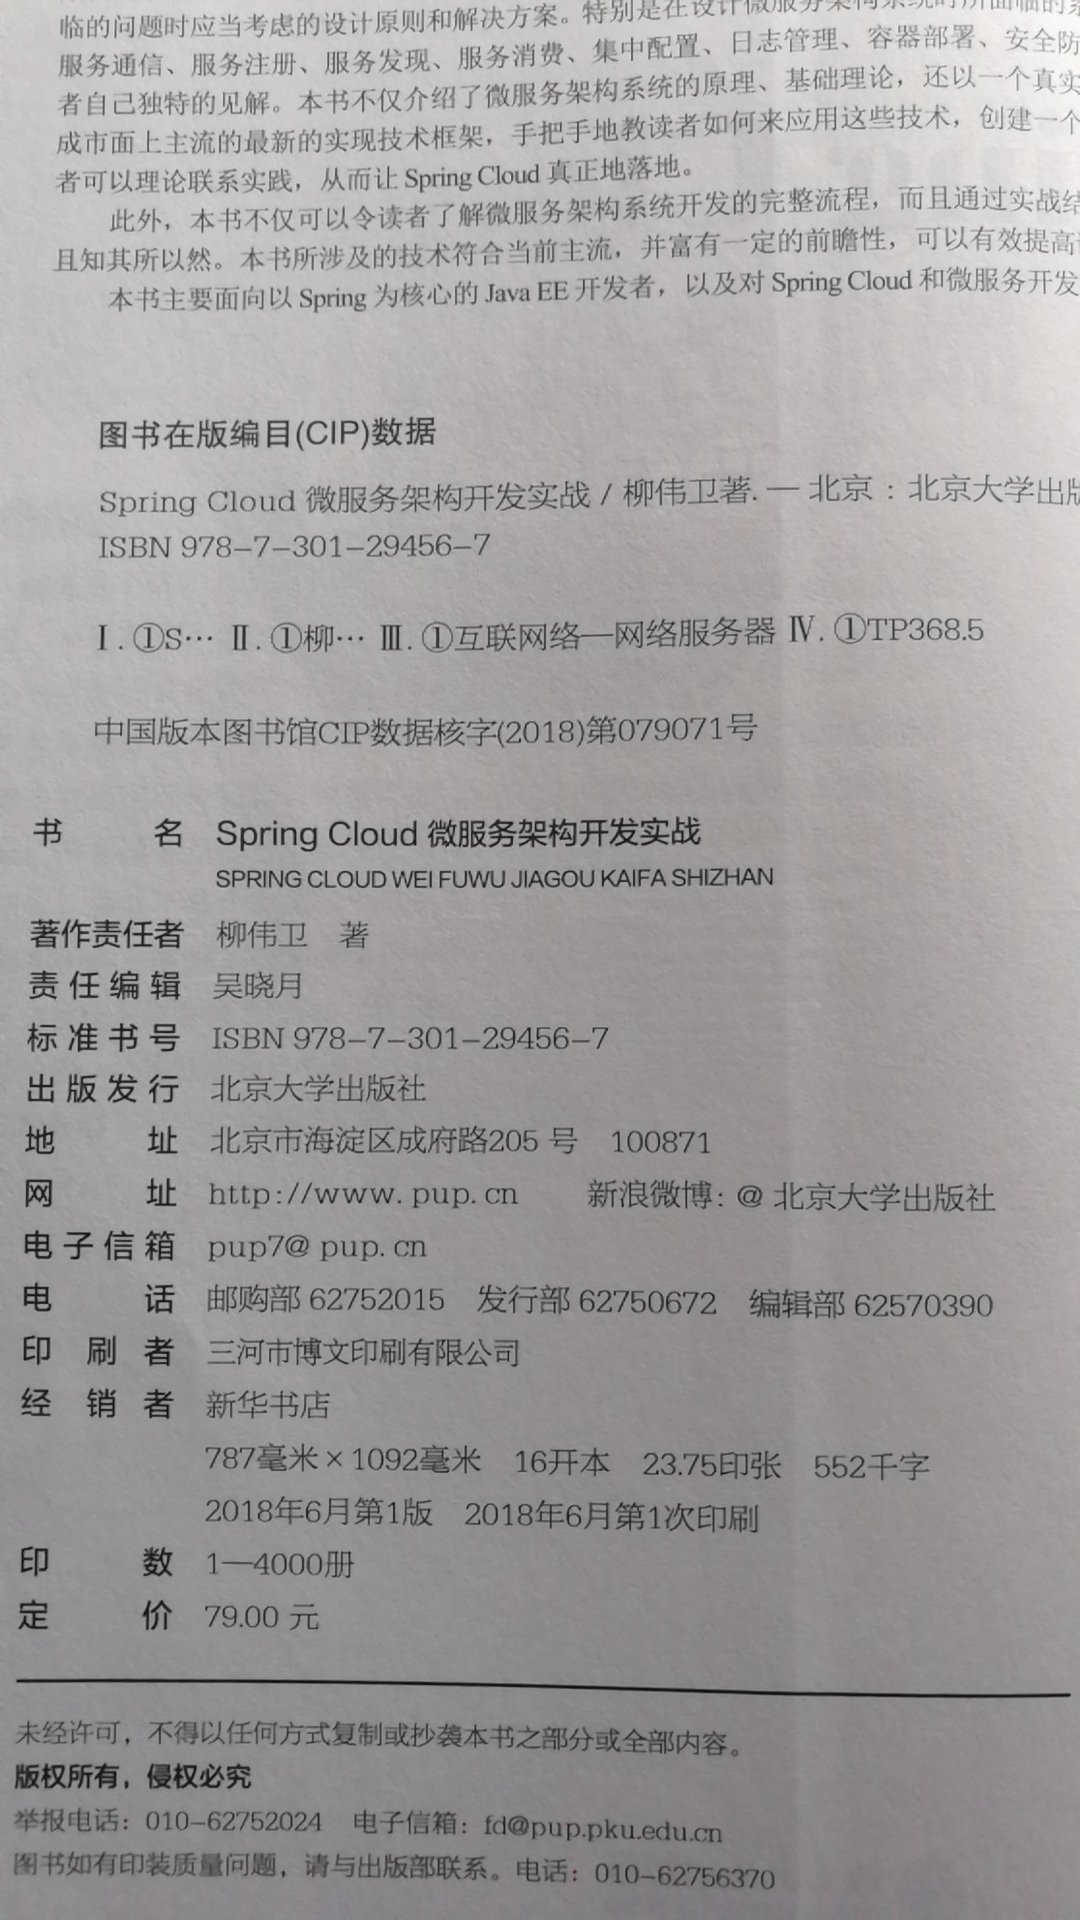 此书讲了Spring Cloud微服务架构的实例，对微服务架构有了一些新的认识，对今后的开发有一定的帮助。